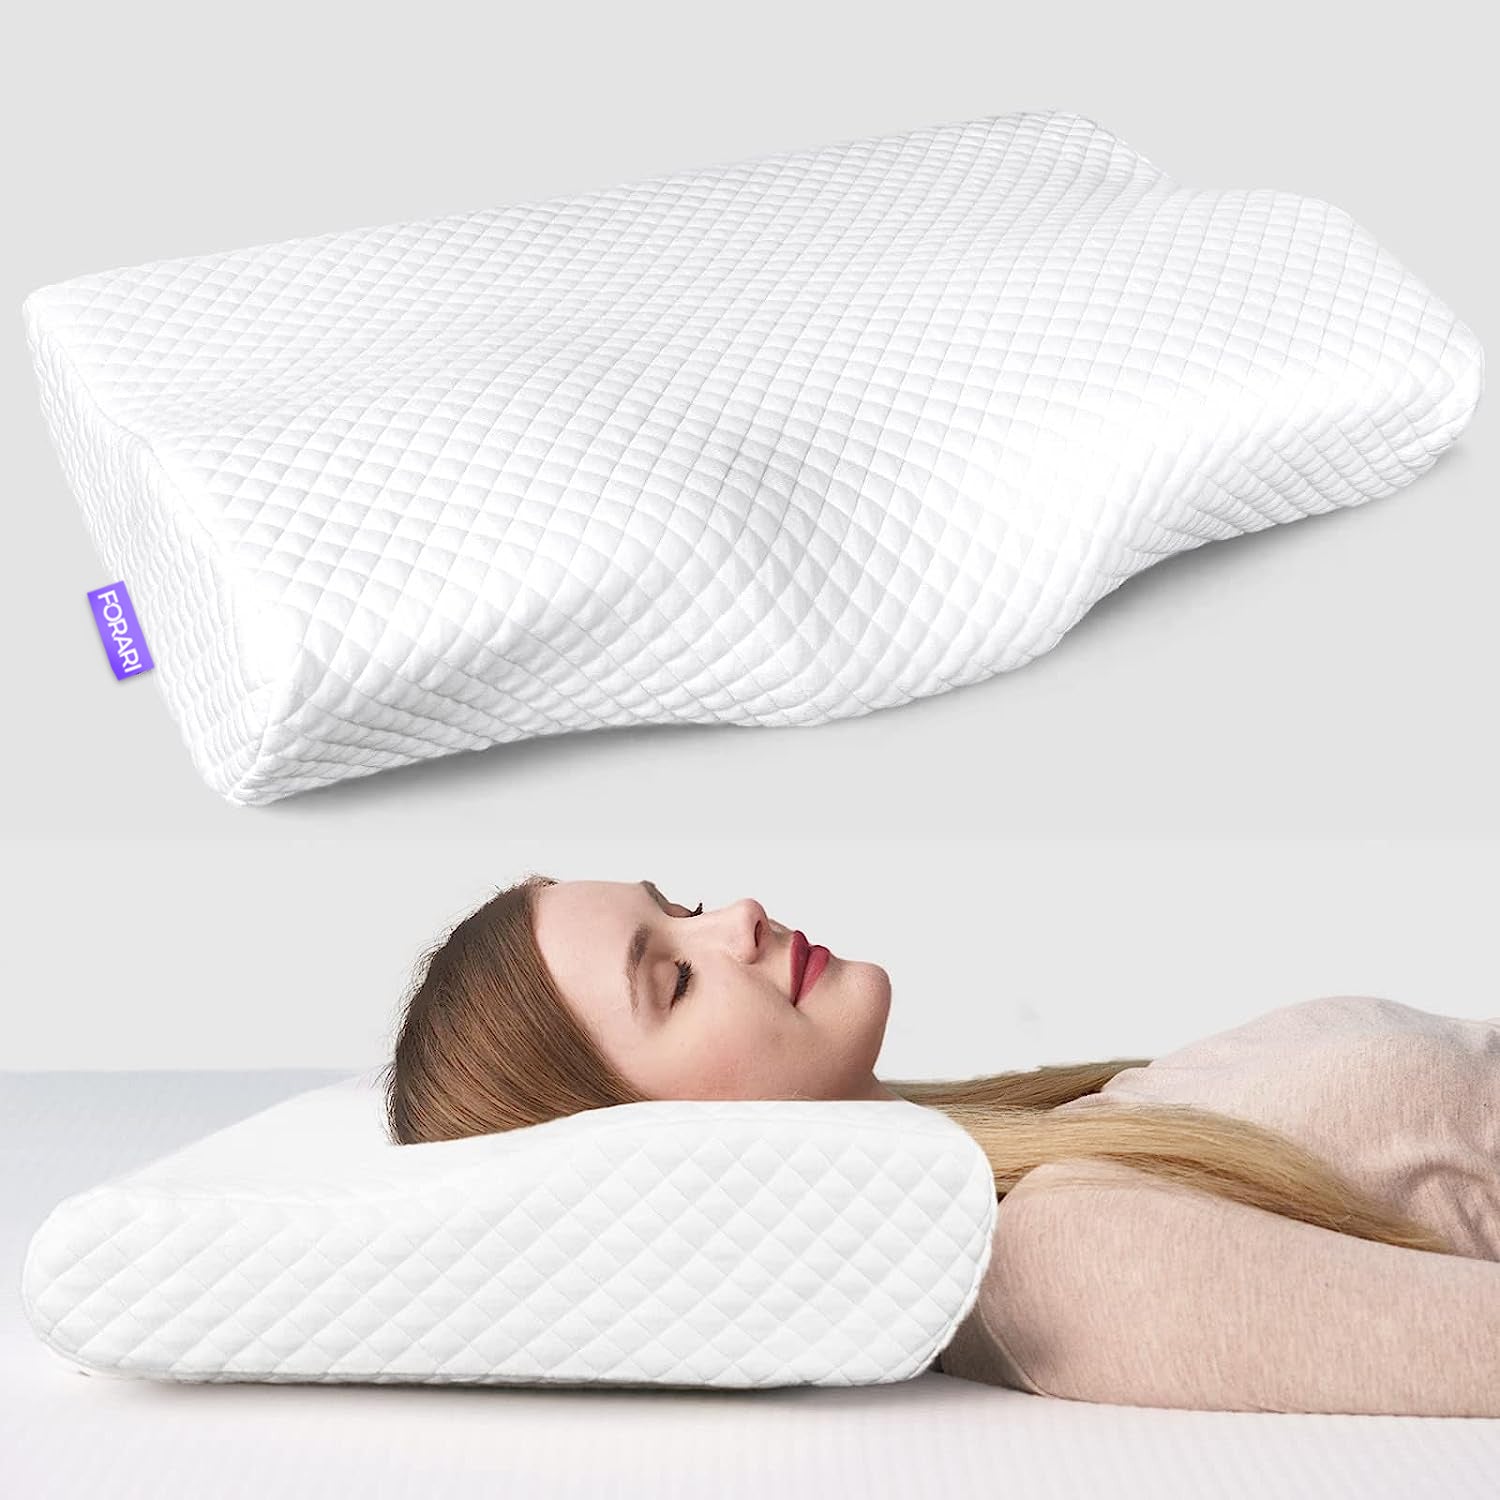 Cloud Comfy™ Cervical Pillow